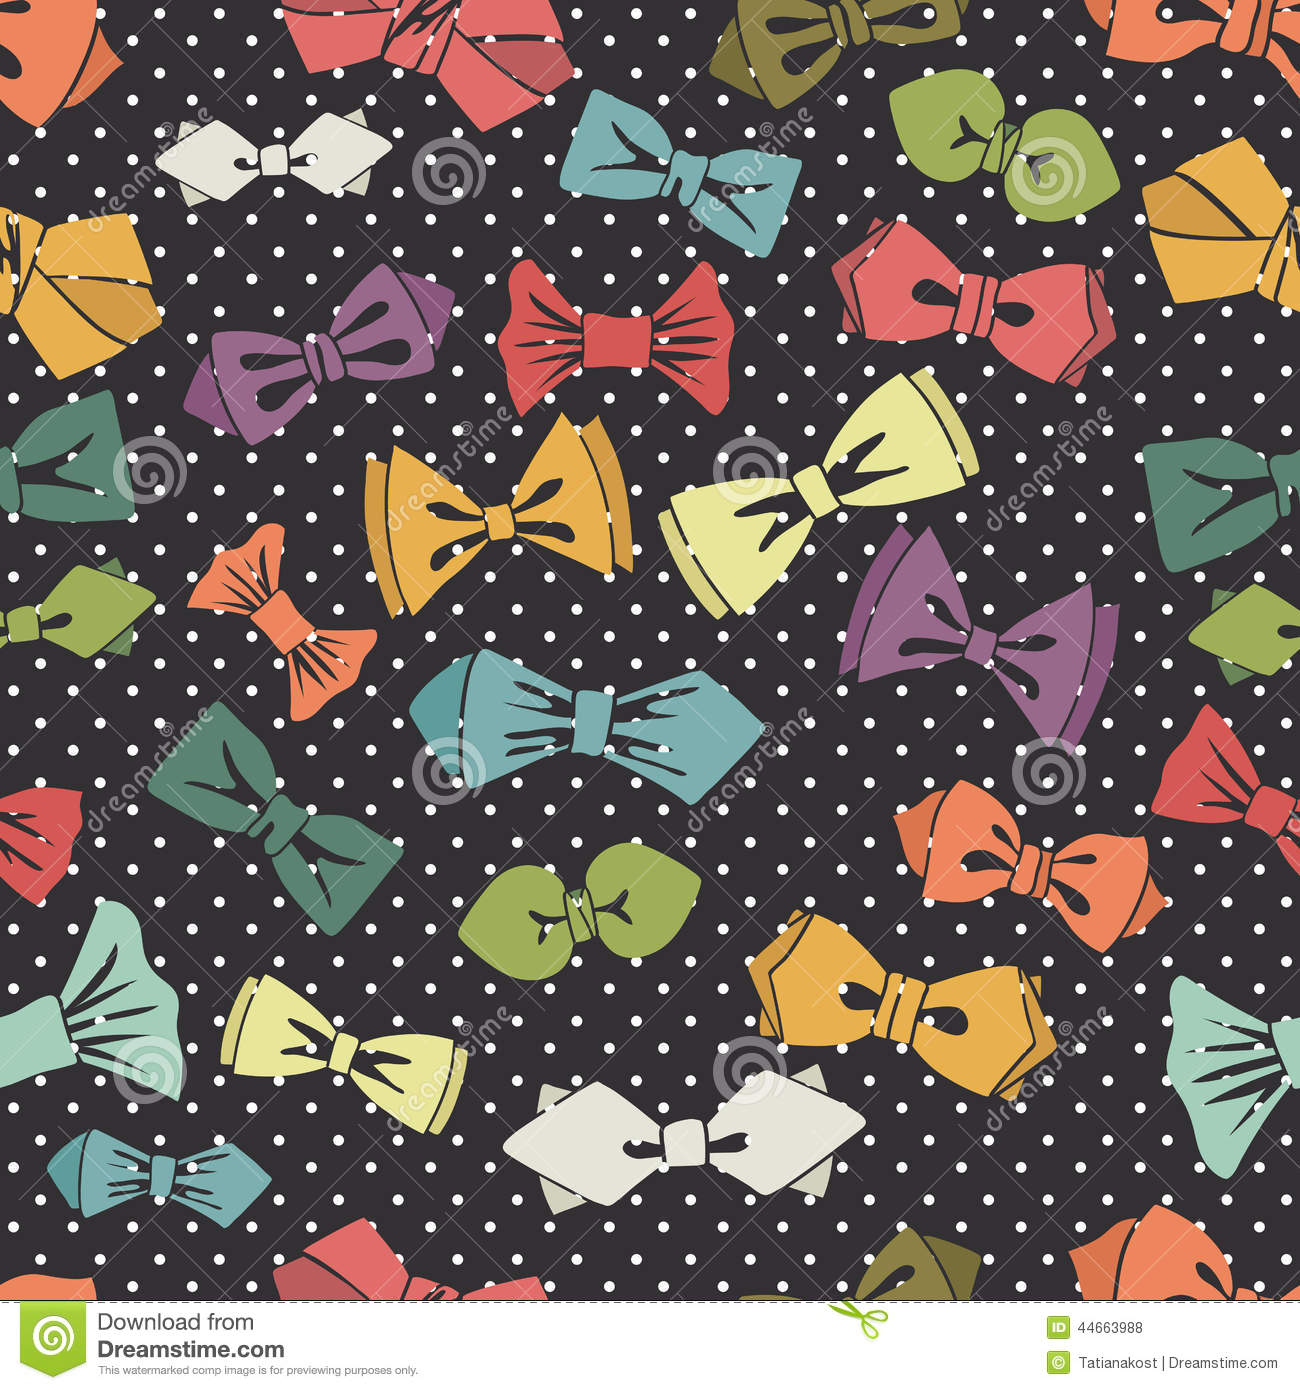 Bow Tie Pattern Wallpaper wwwgalleryhipcom   The